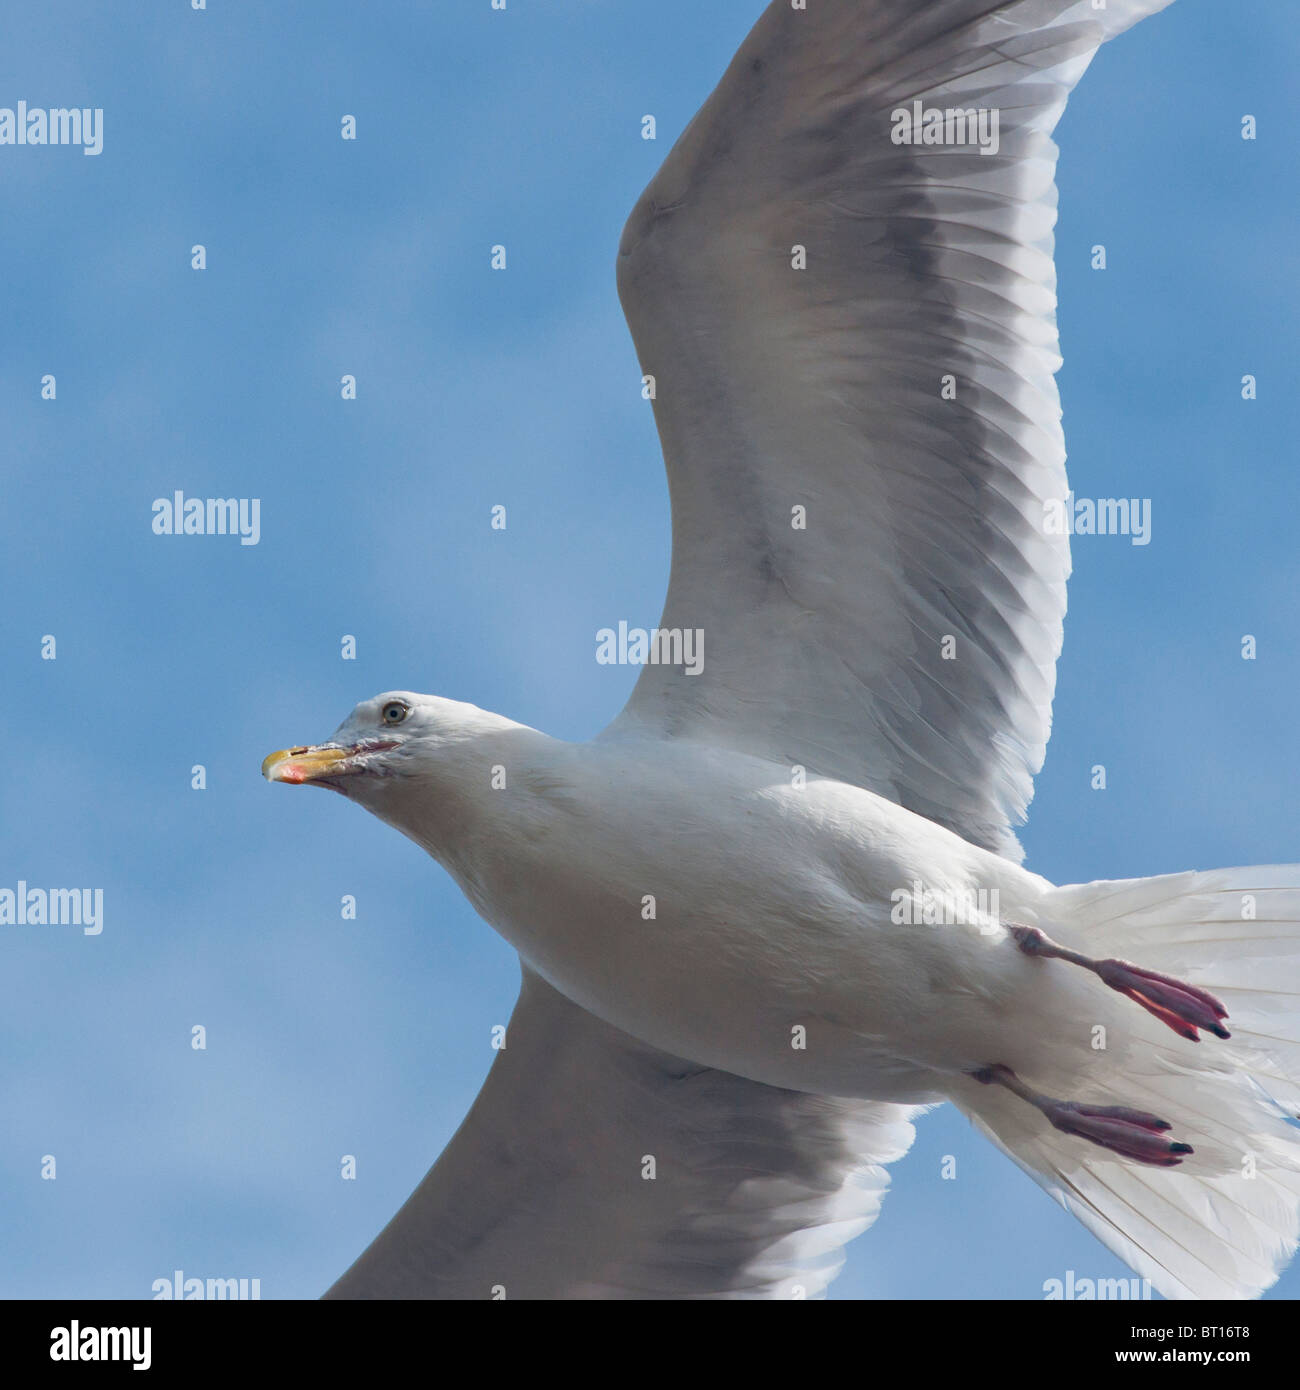 A Herring Gull in flight at Tynemouth, UK Stock Photo